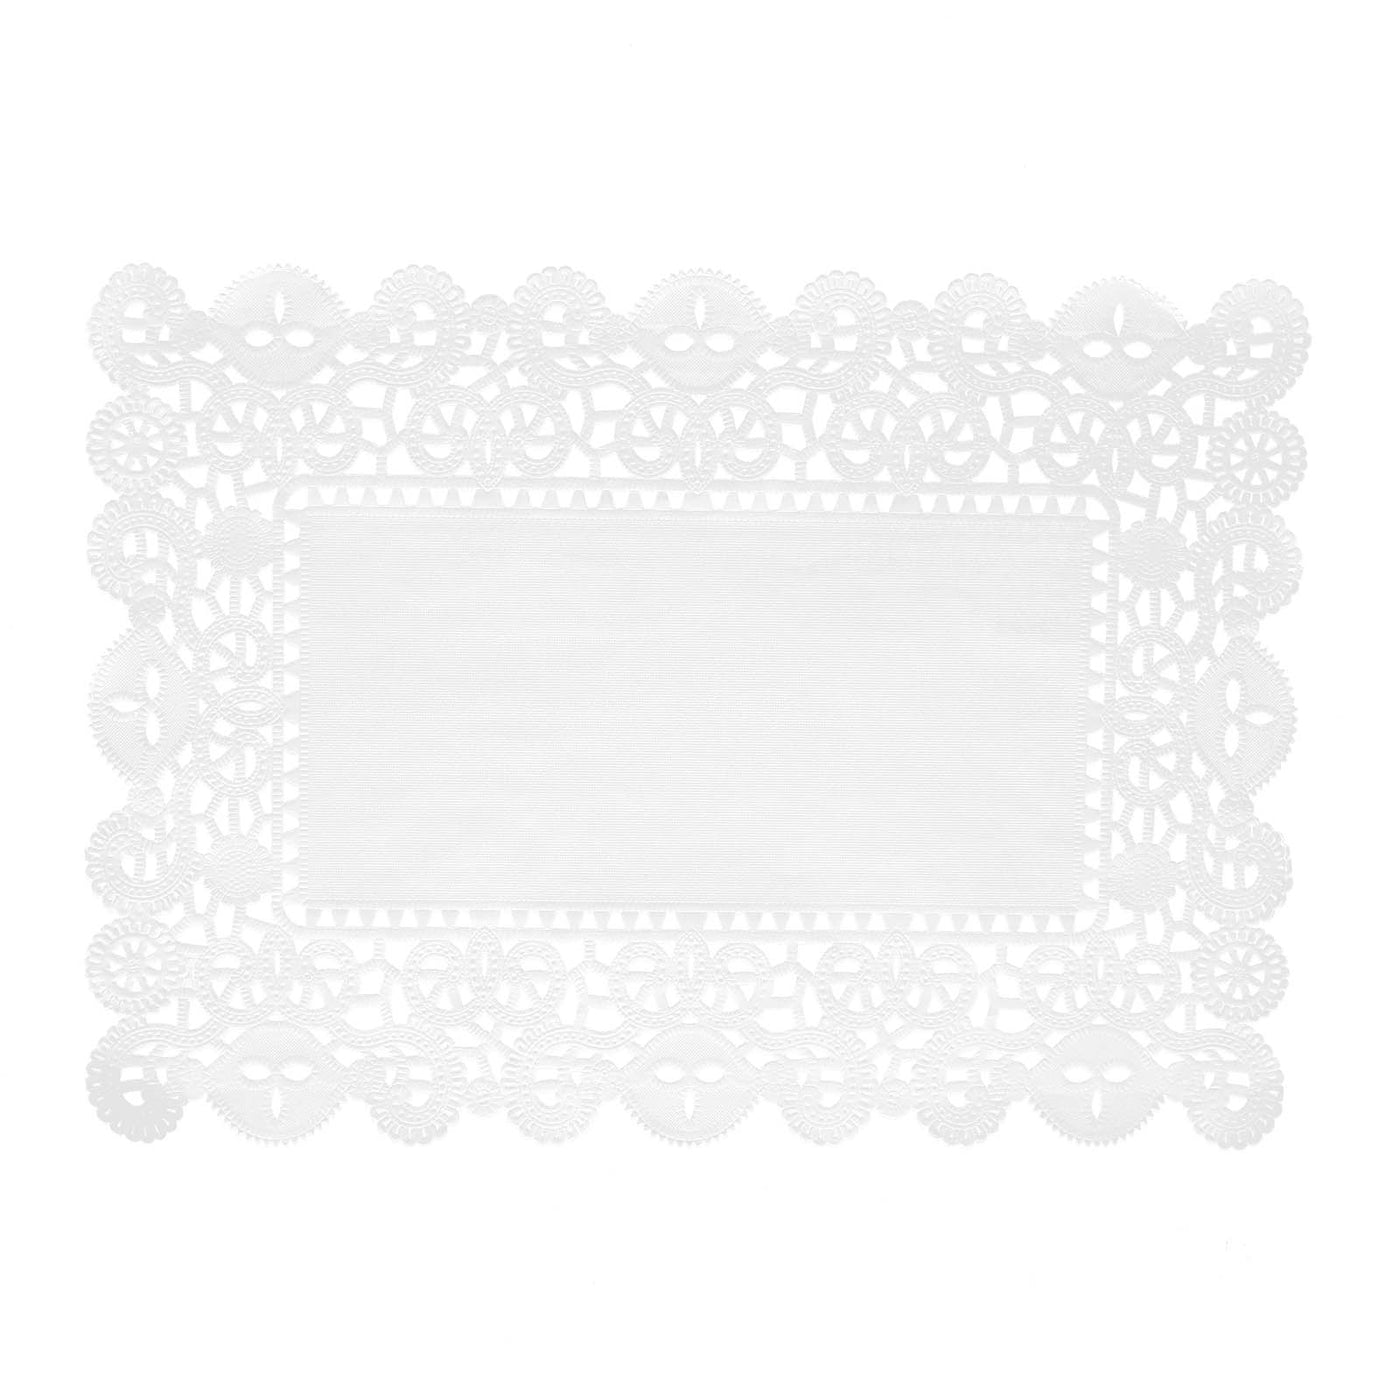 100 Pcs White Lace Paper Placemats | eFavormart.com